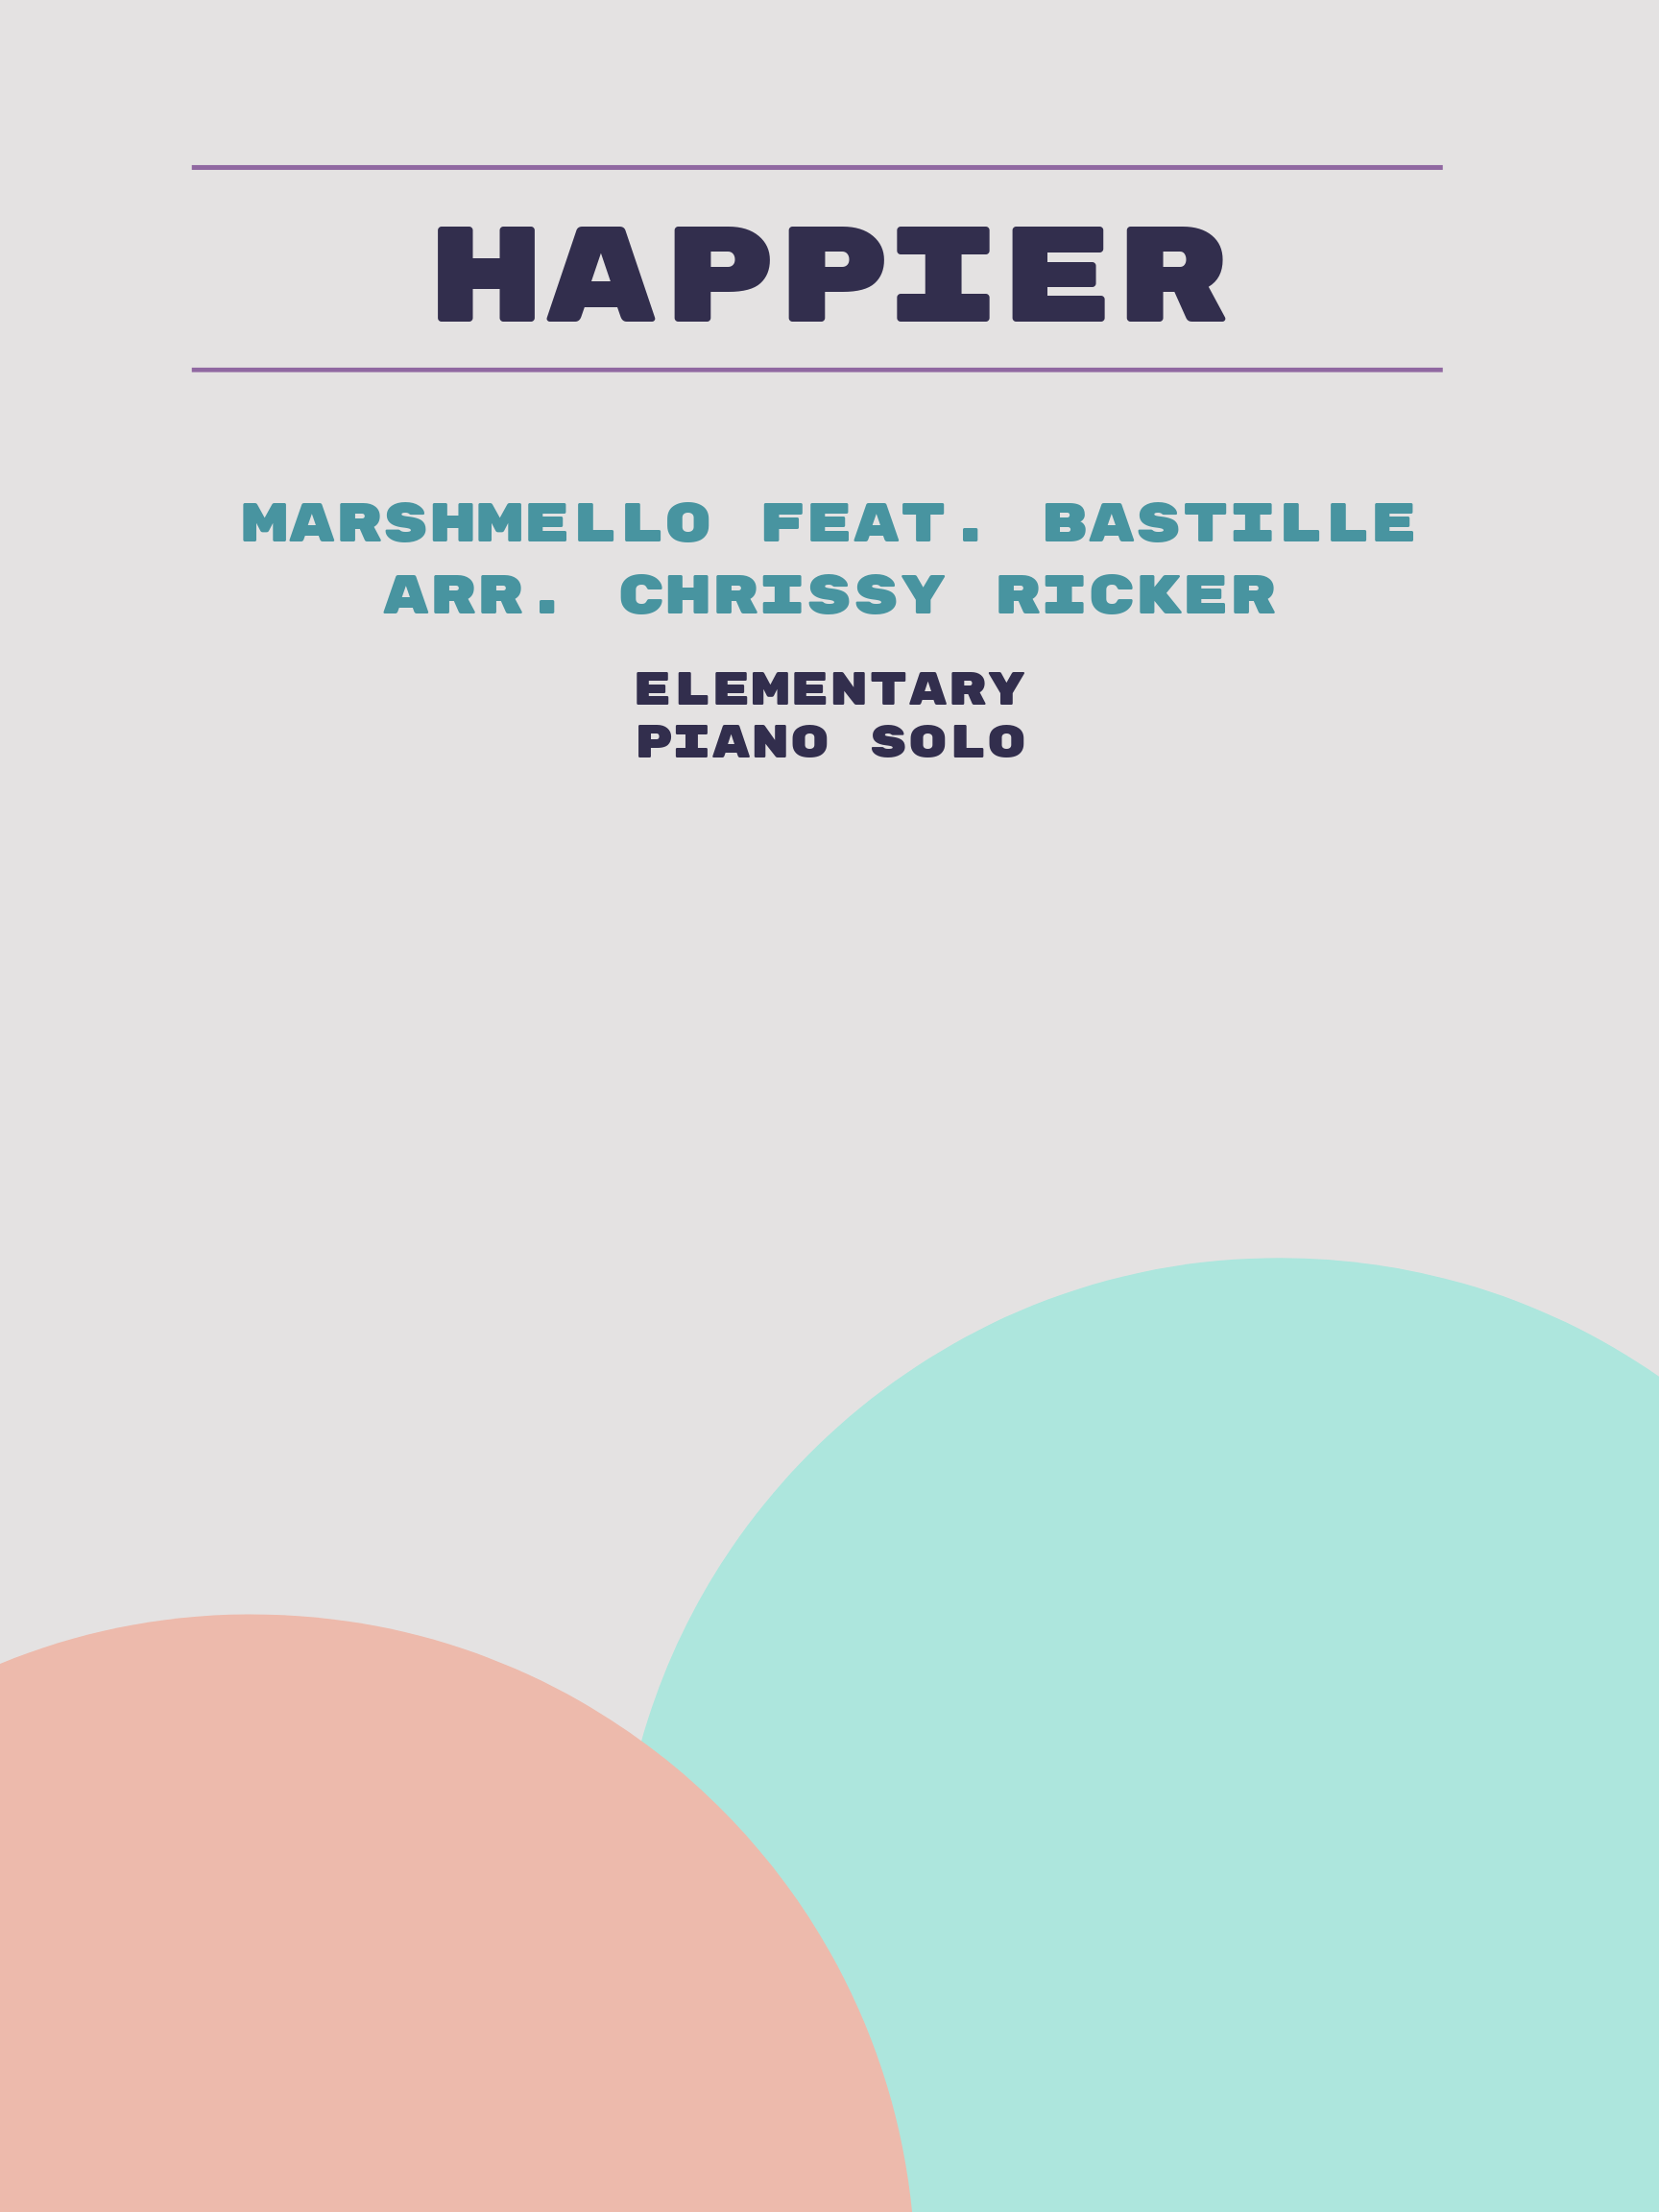 Happier by Marshmello feat. Bastille